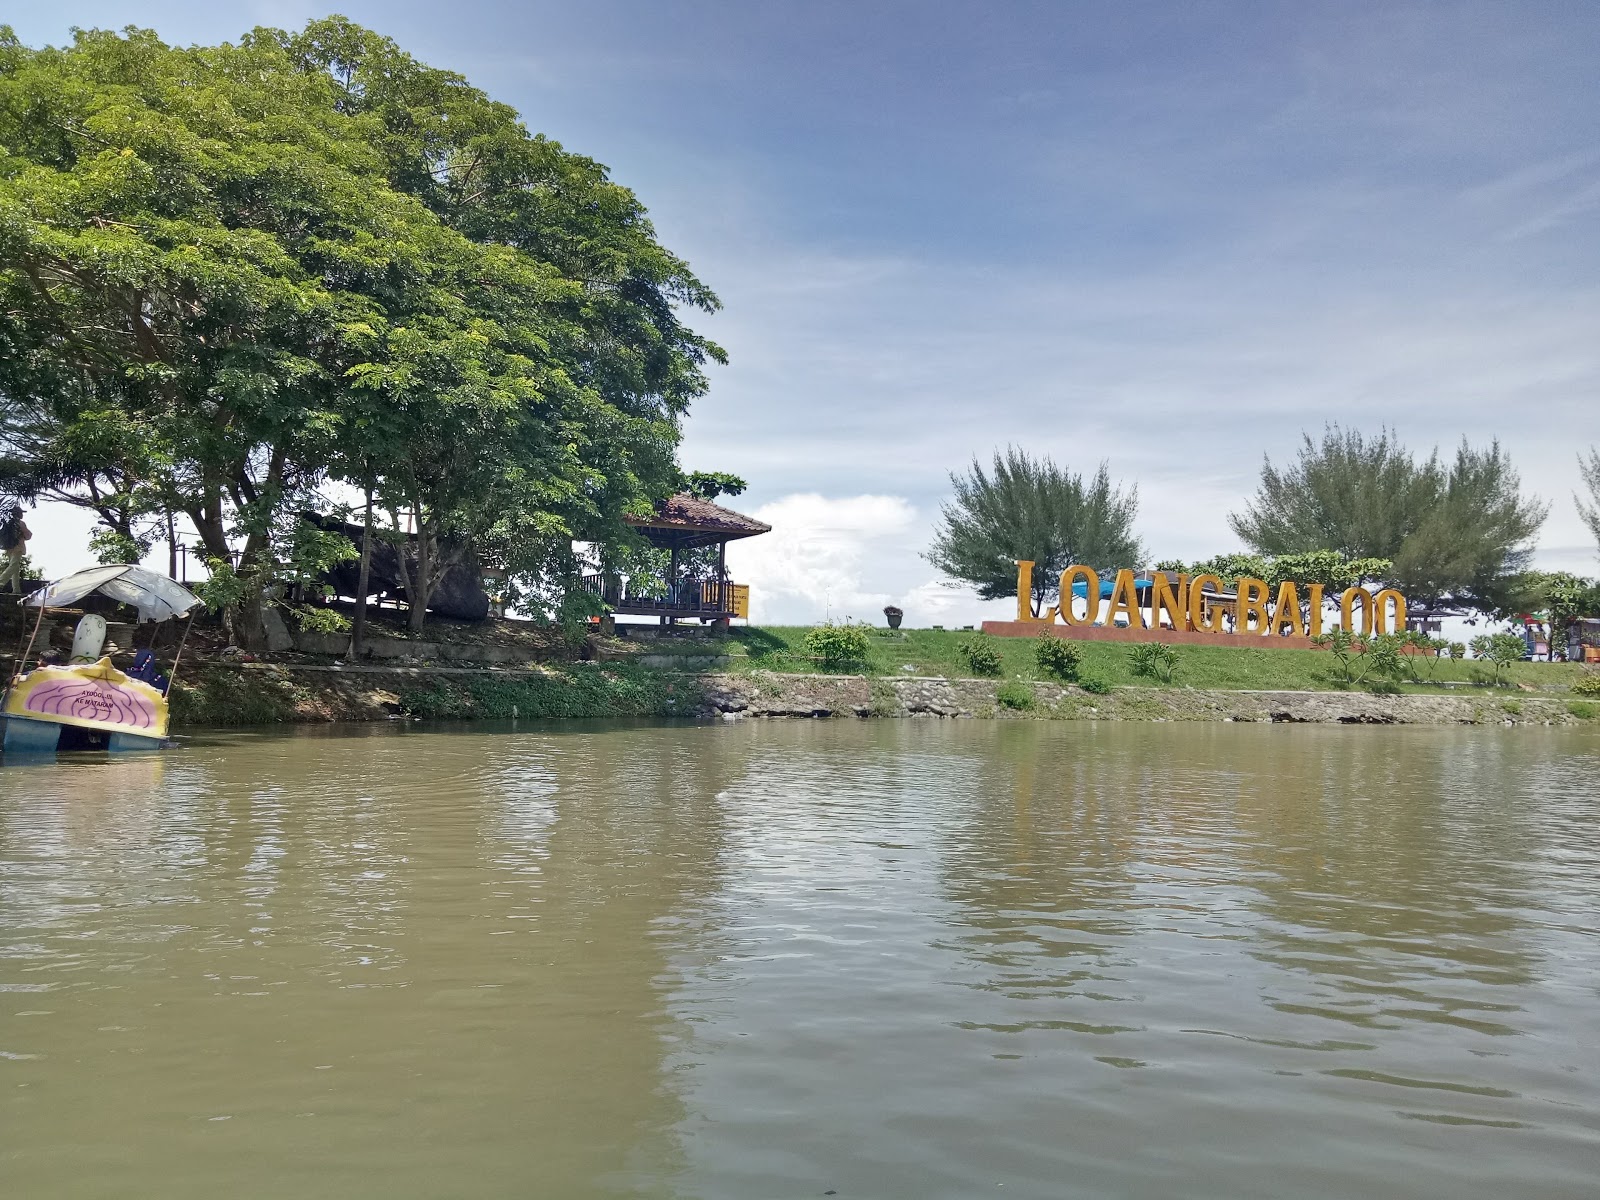 Fotografie cu Loang Baloq Beach cu o suprafață de apa pură turcoaz